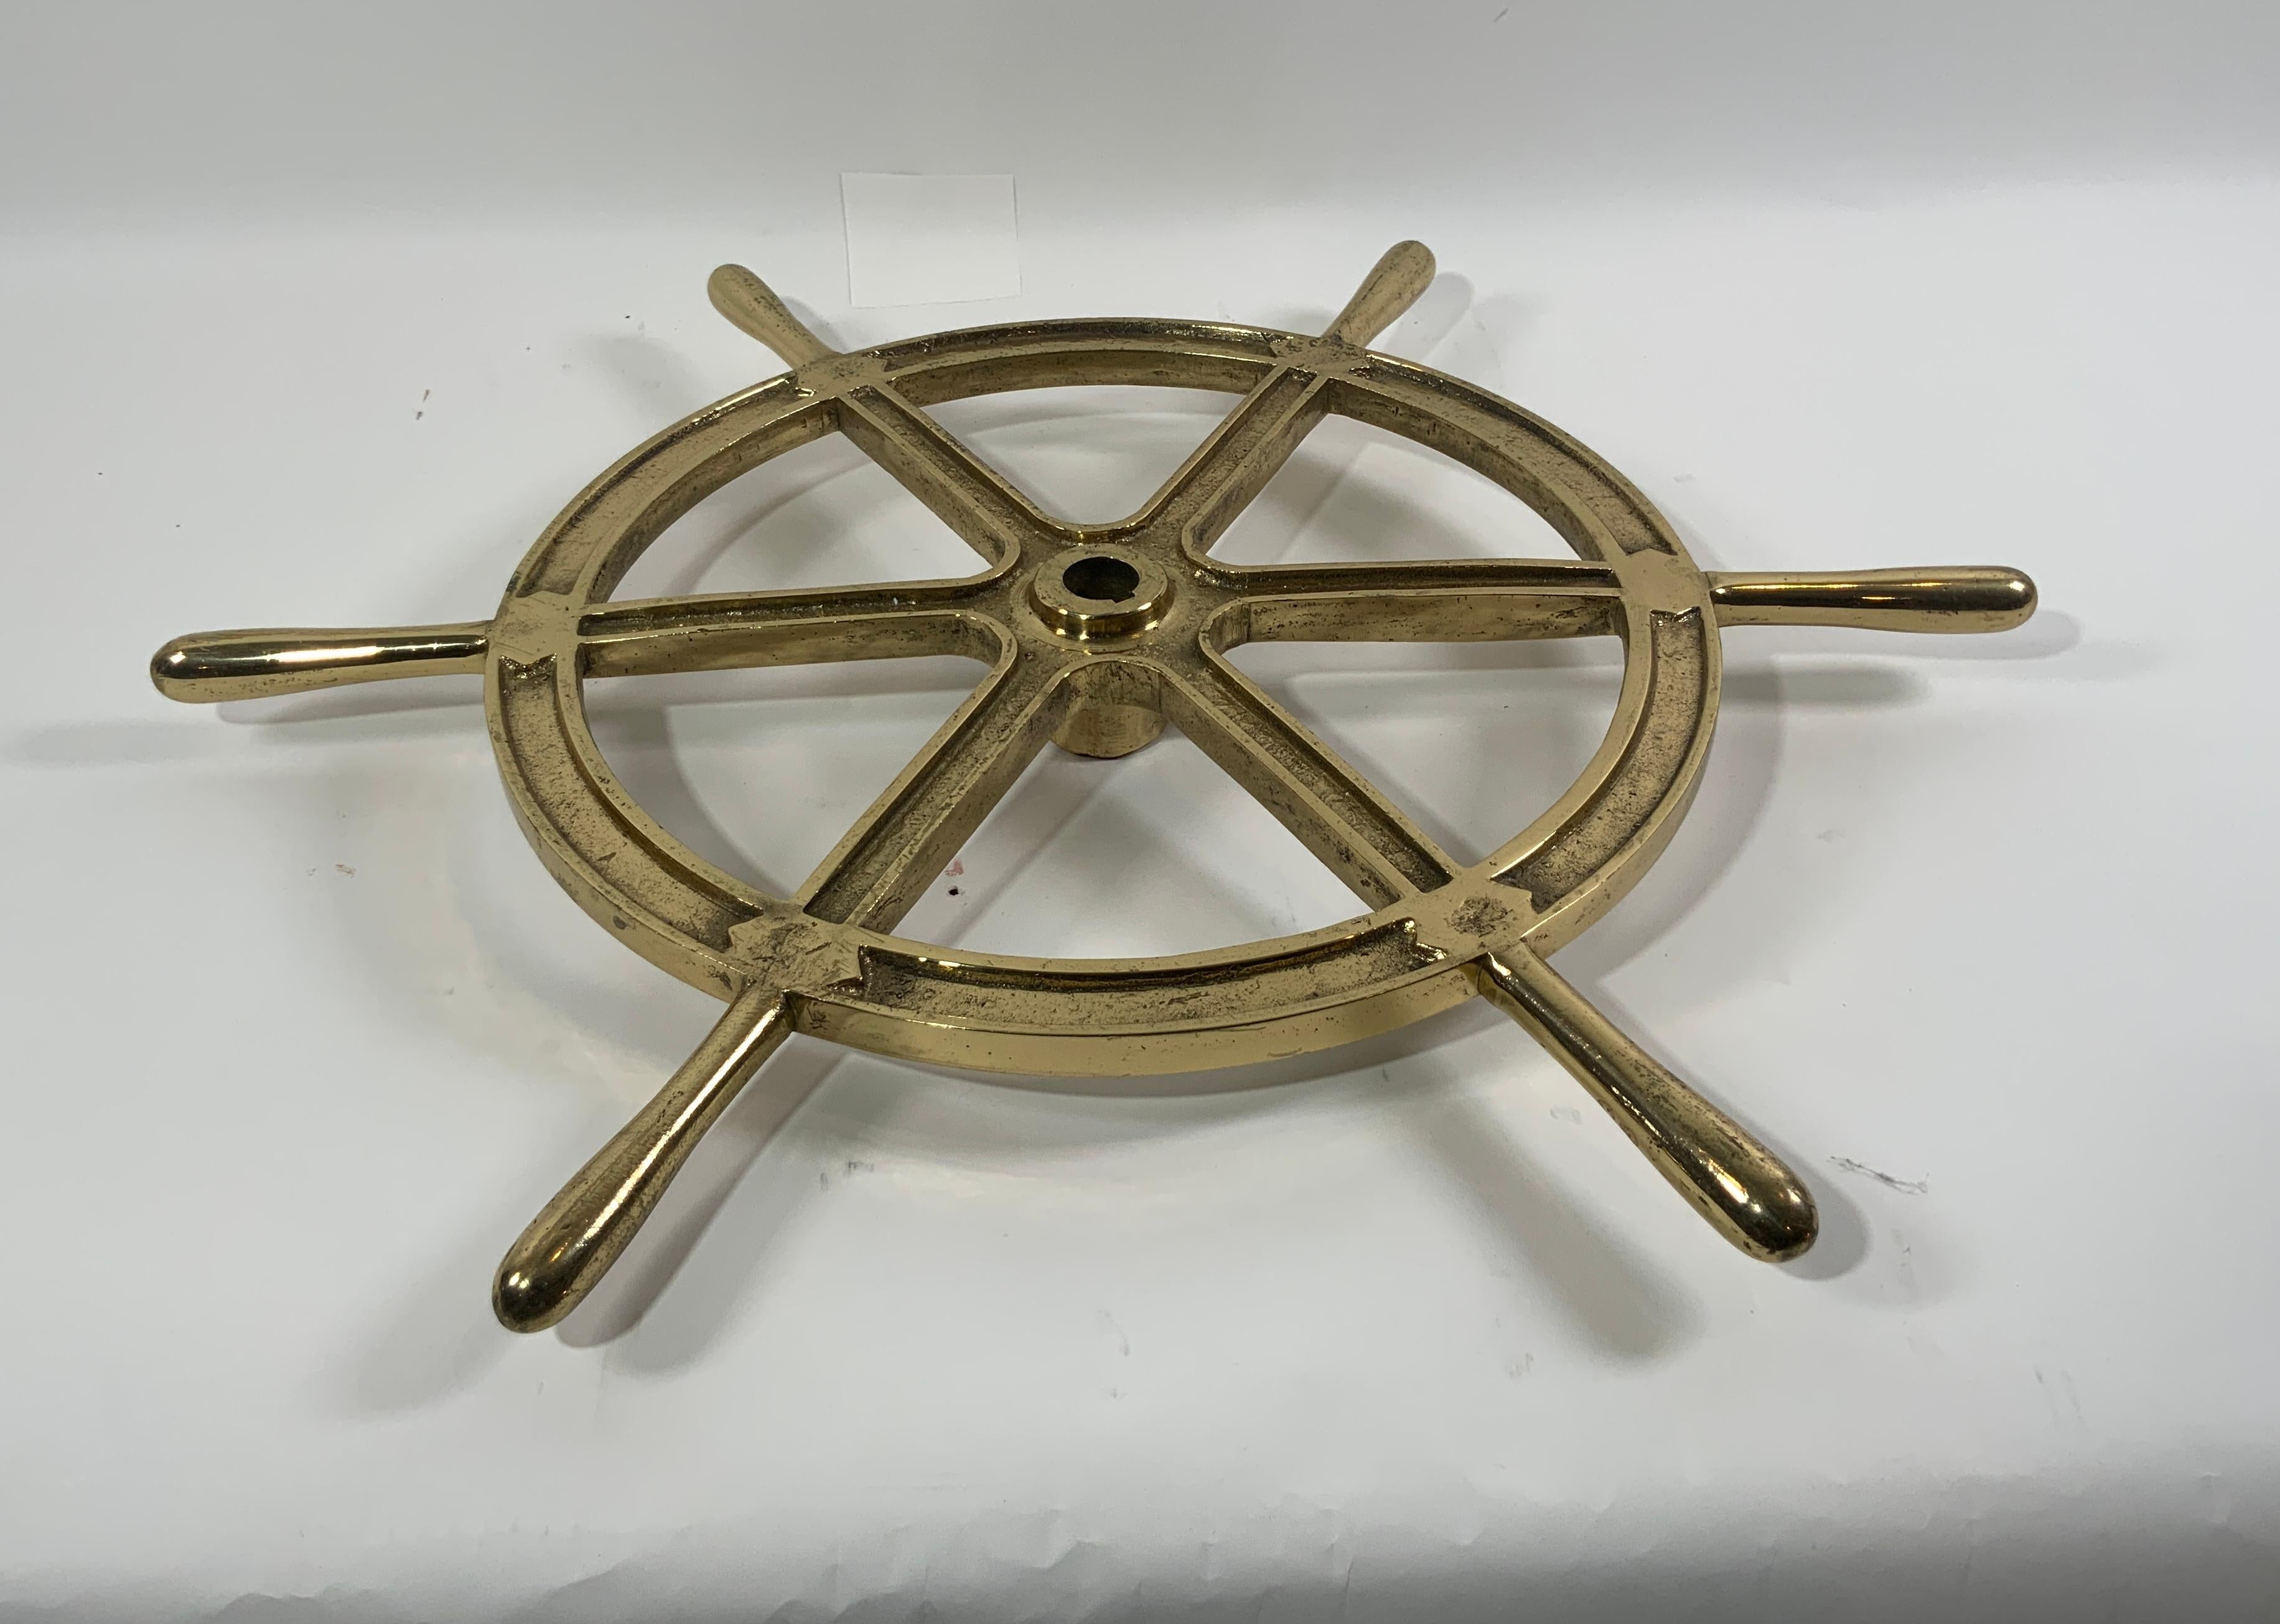 Six Spoke Solid Brass Ships Wheel For Sale 1